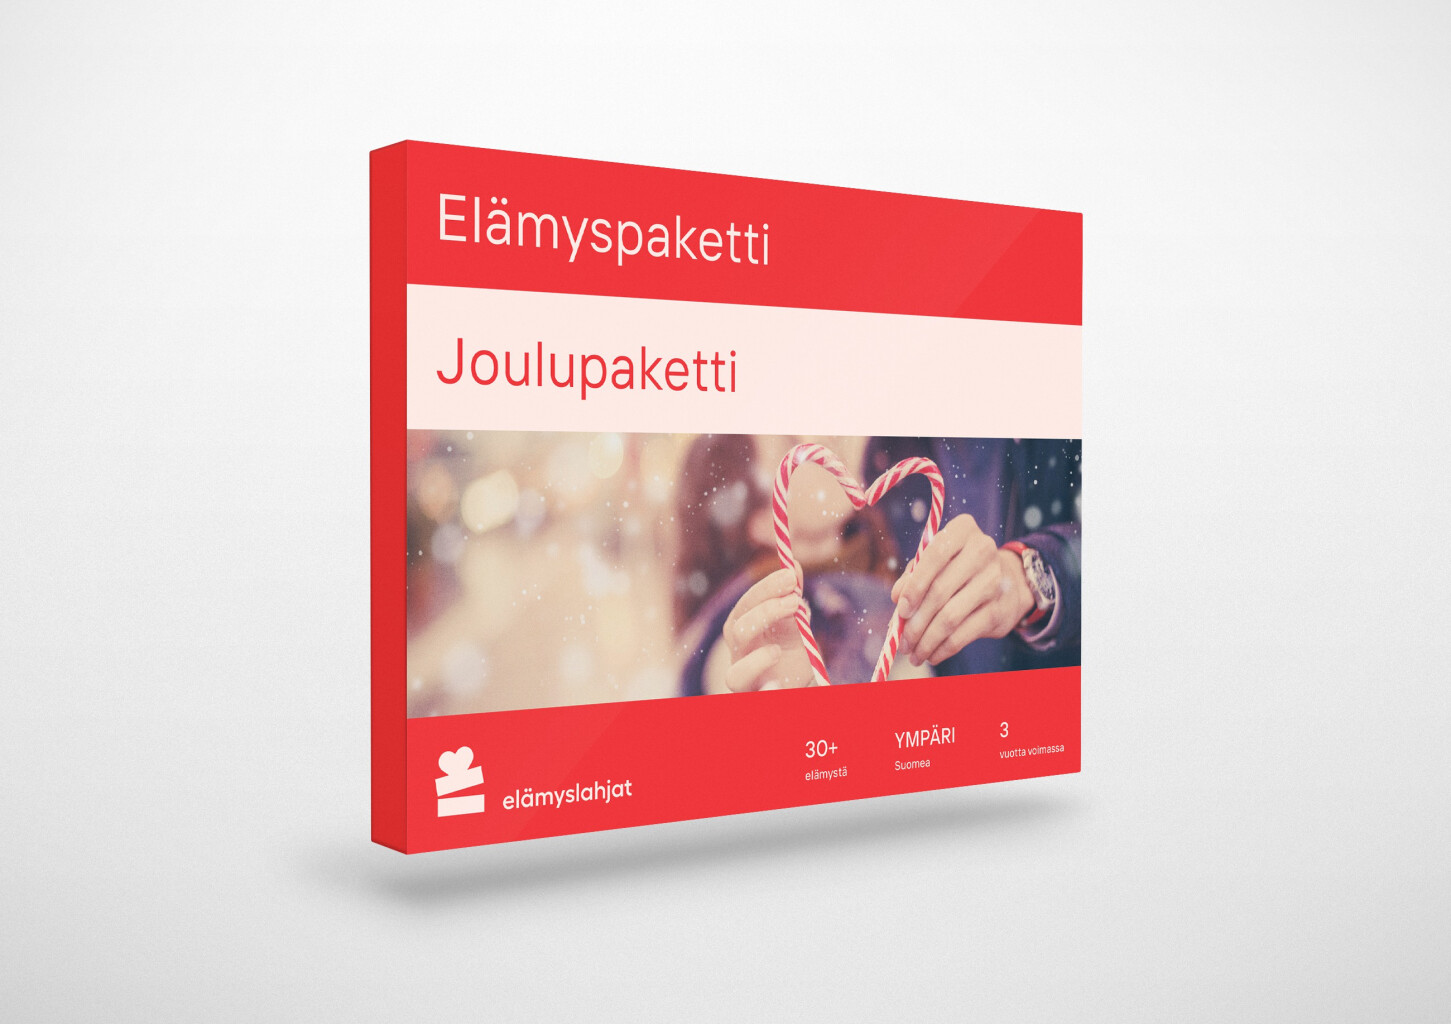 Joulupaketti | Ympäri Suomen